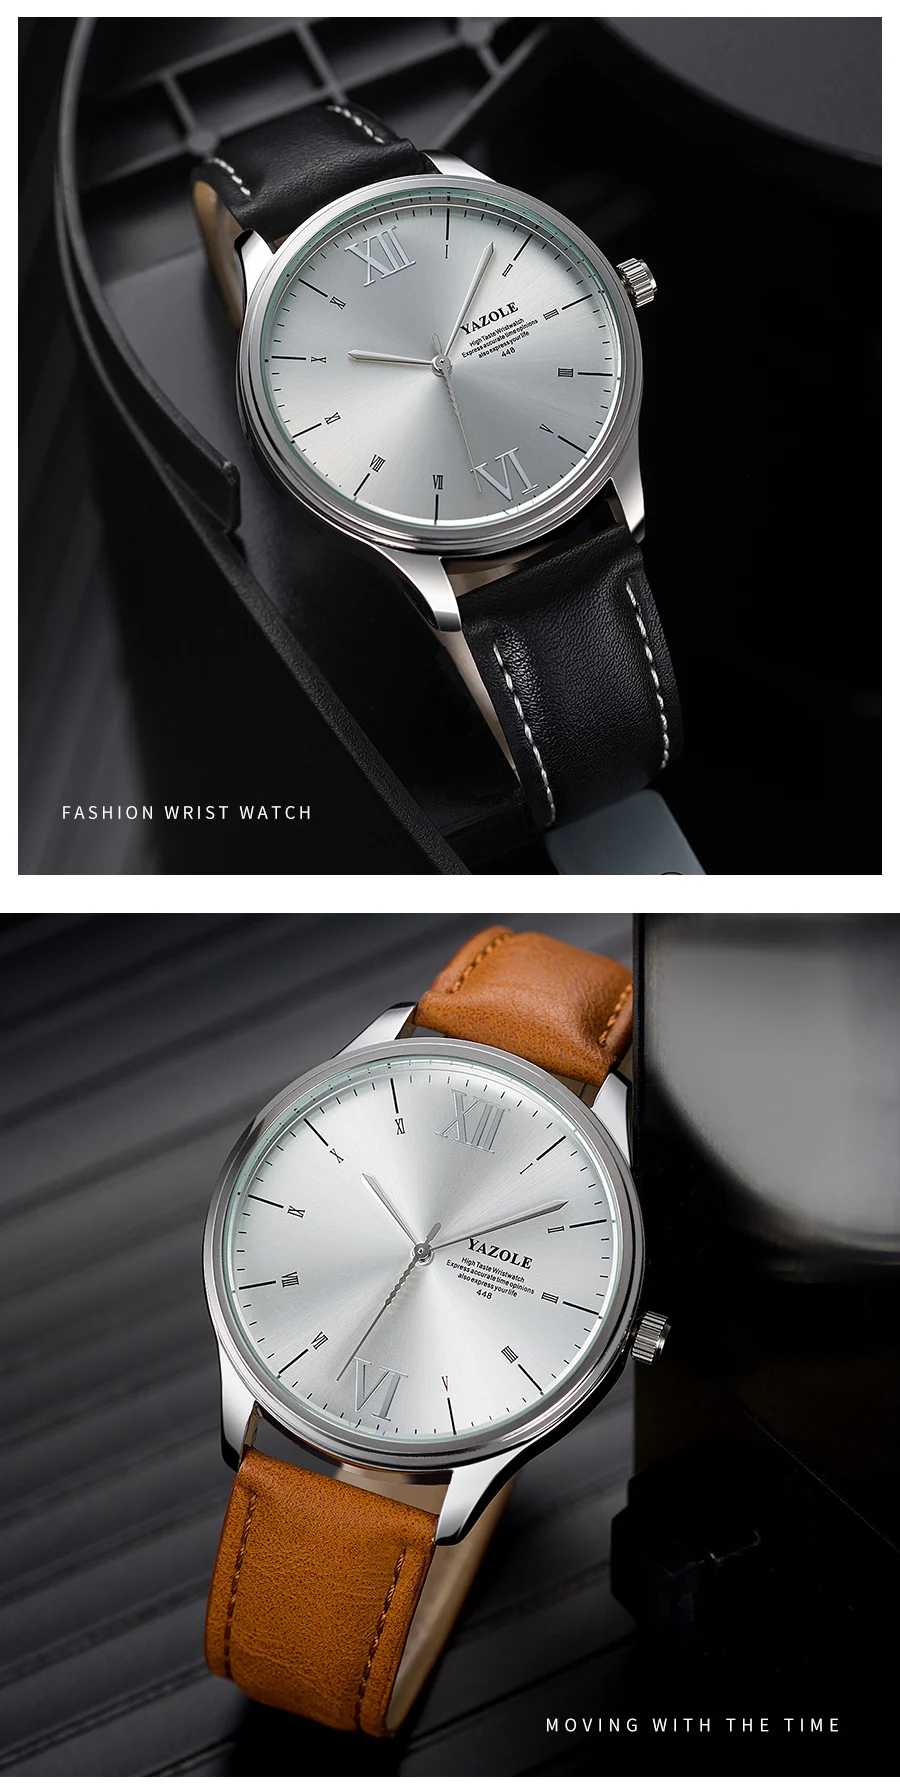 YAZOLE лучший бренд класса люкс мужские s модные часы в деловом стиле Мужские часы кожаные часы relogio masculino erkek kol saati